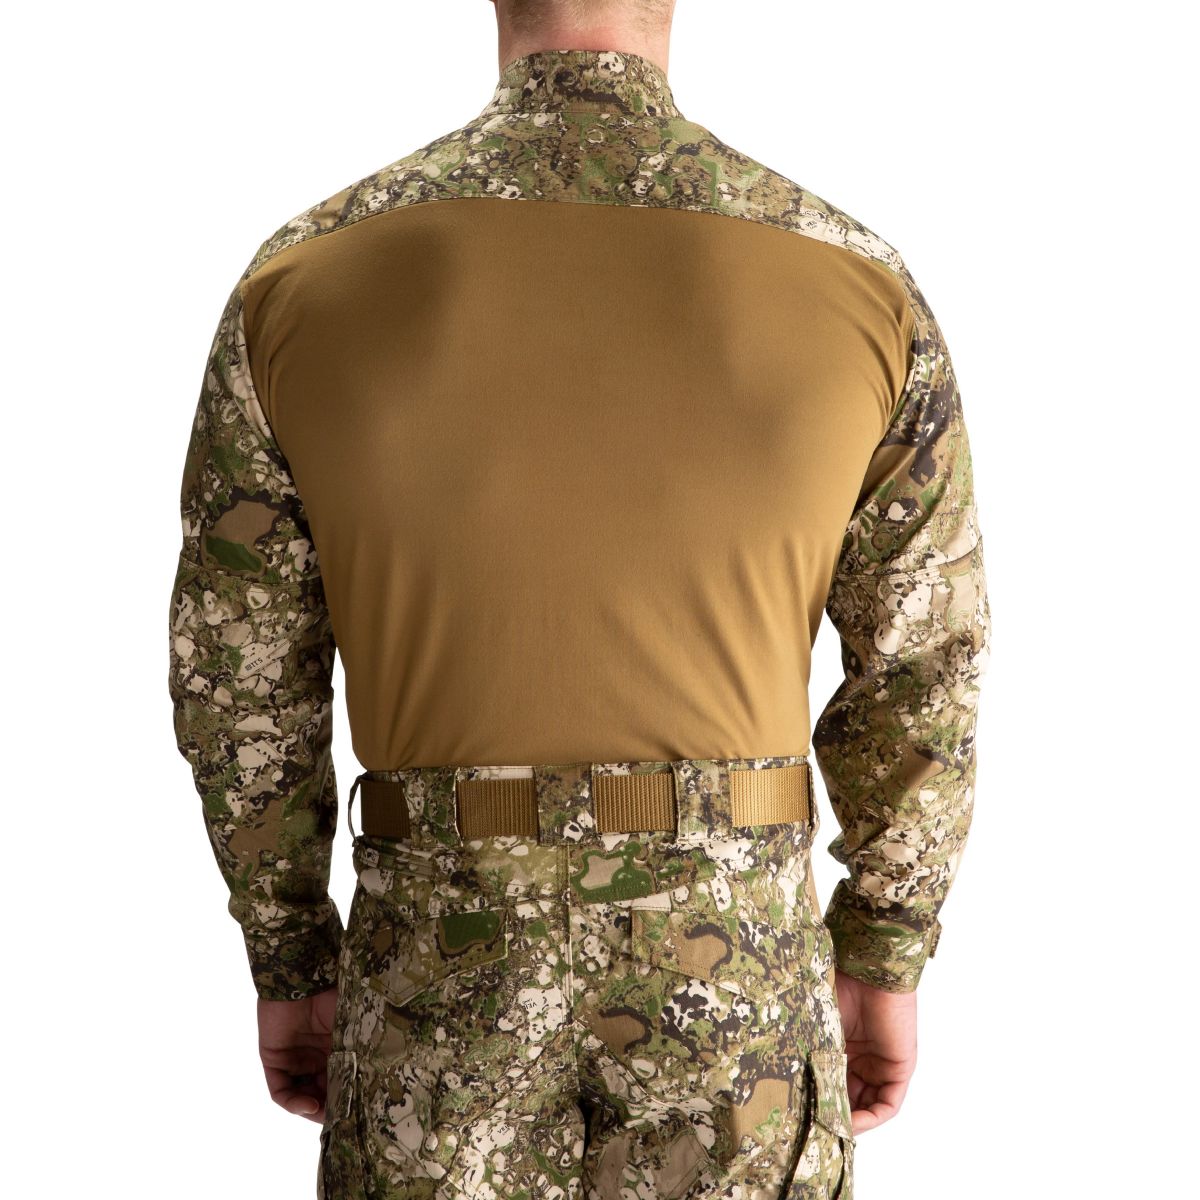 Рубашка тактическая под бронежилет 5.11 Tactical® GEO7. Территория 8